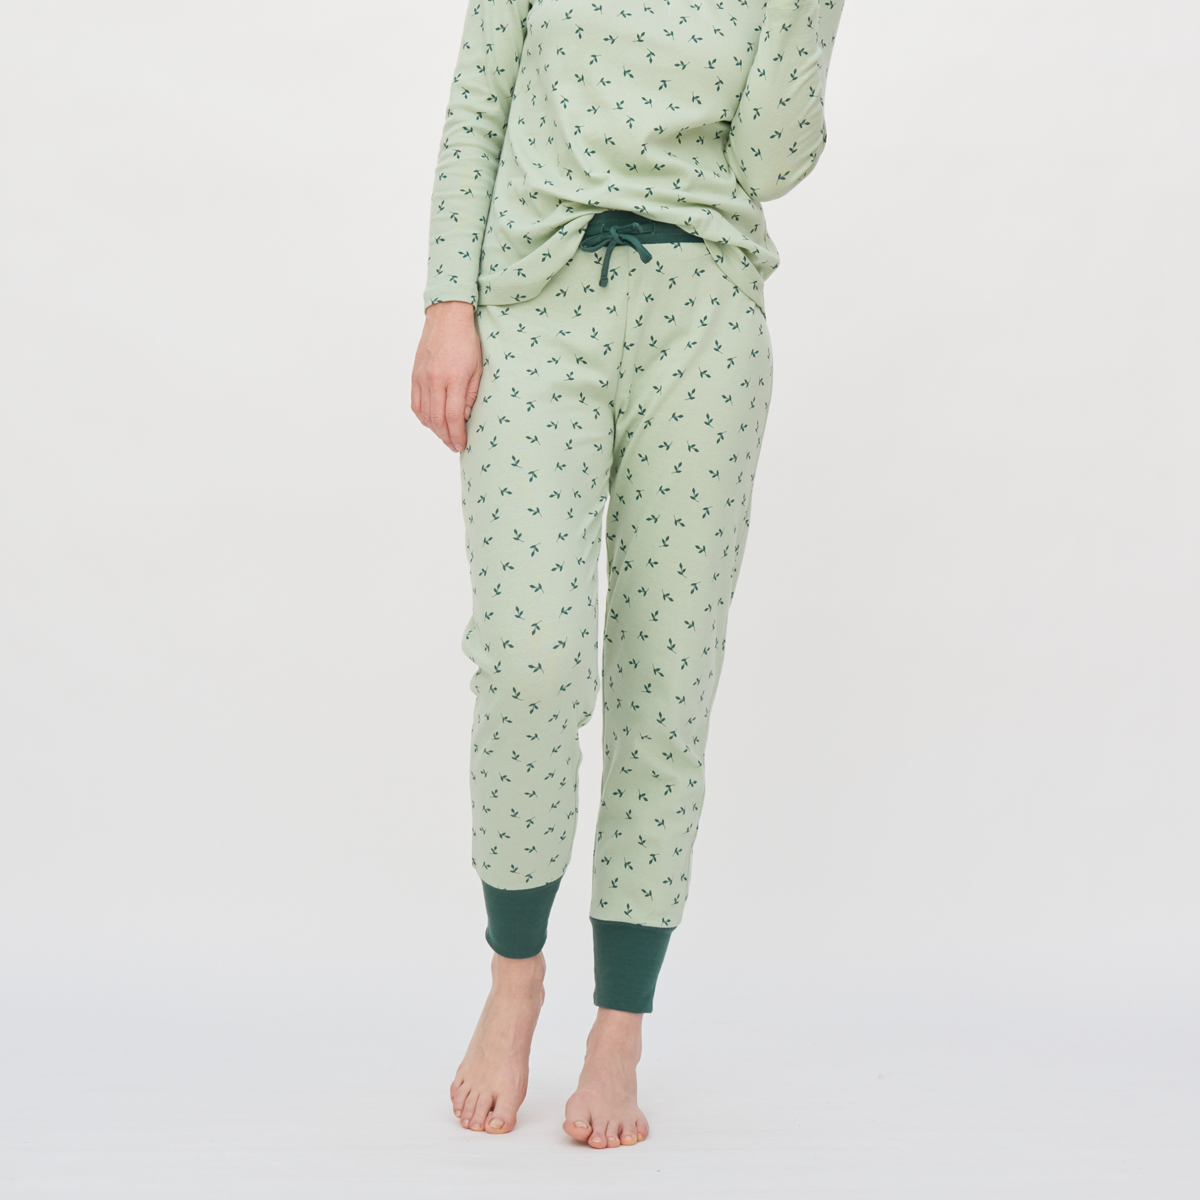 Pattern Women Sleep trousers